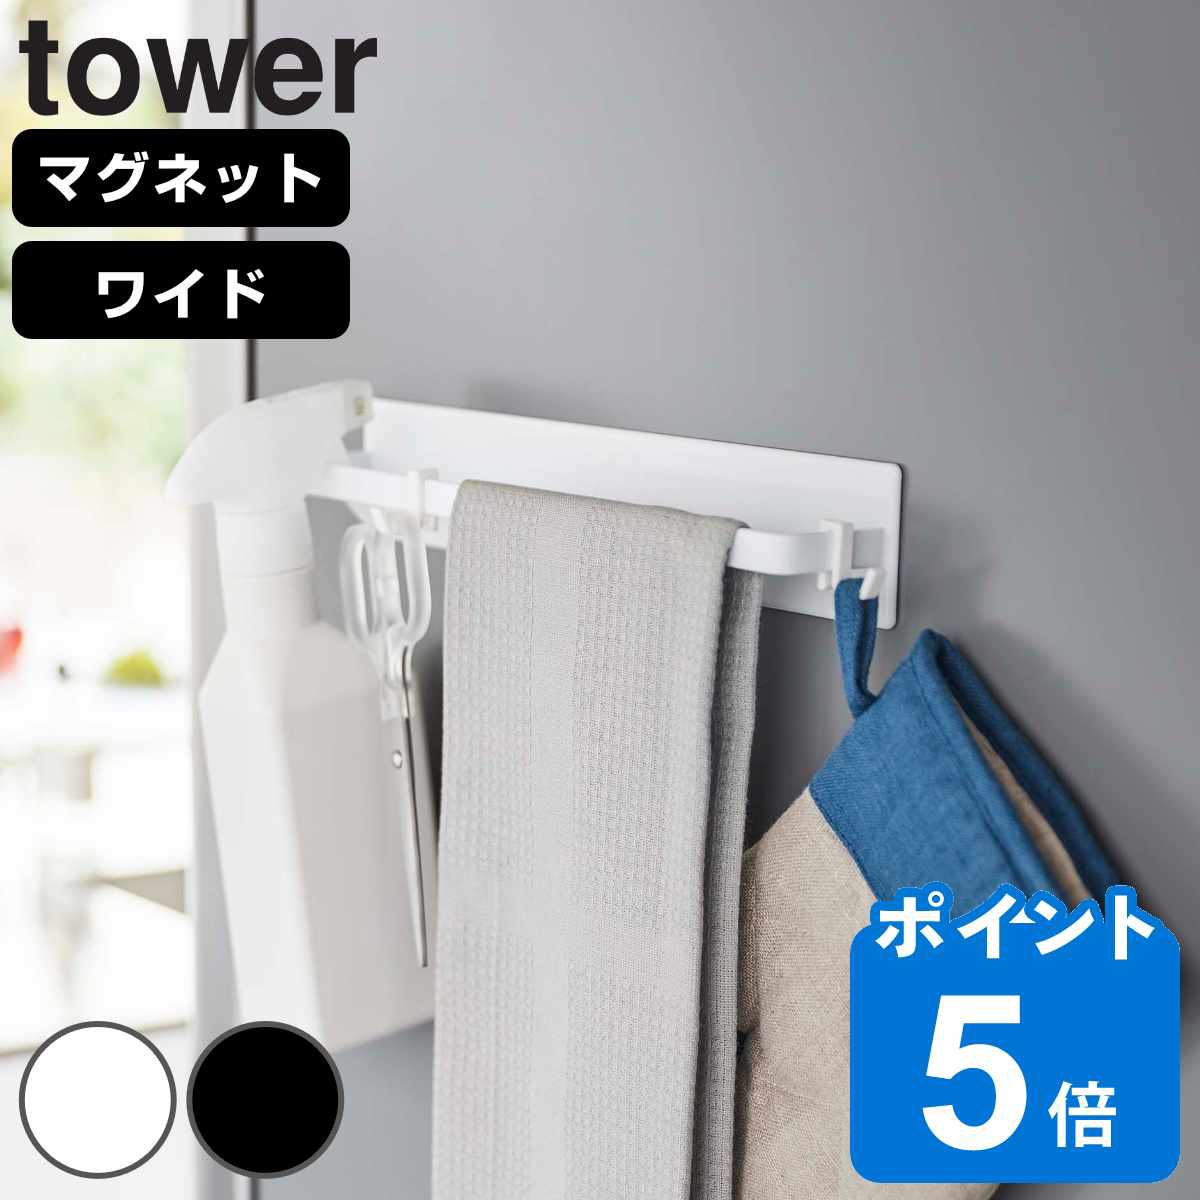 R tower }OlbgLb`^InK[ ^[ Ch